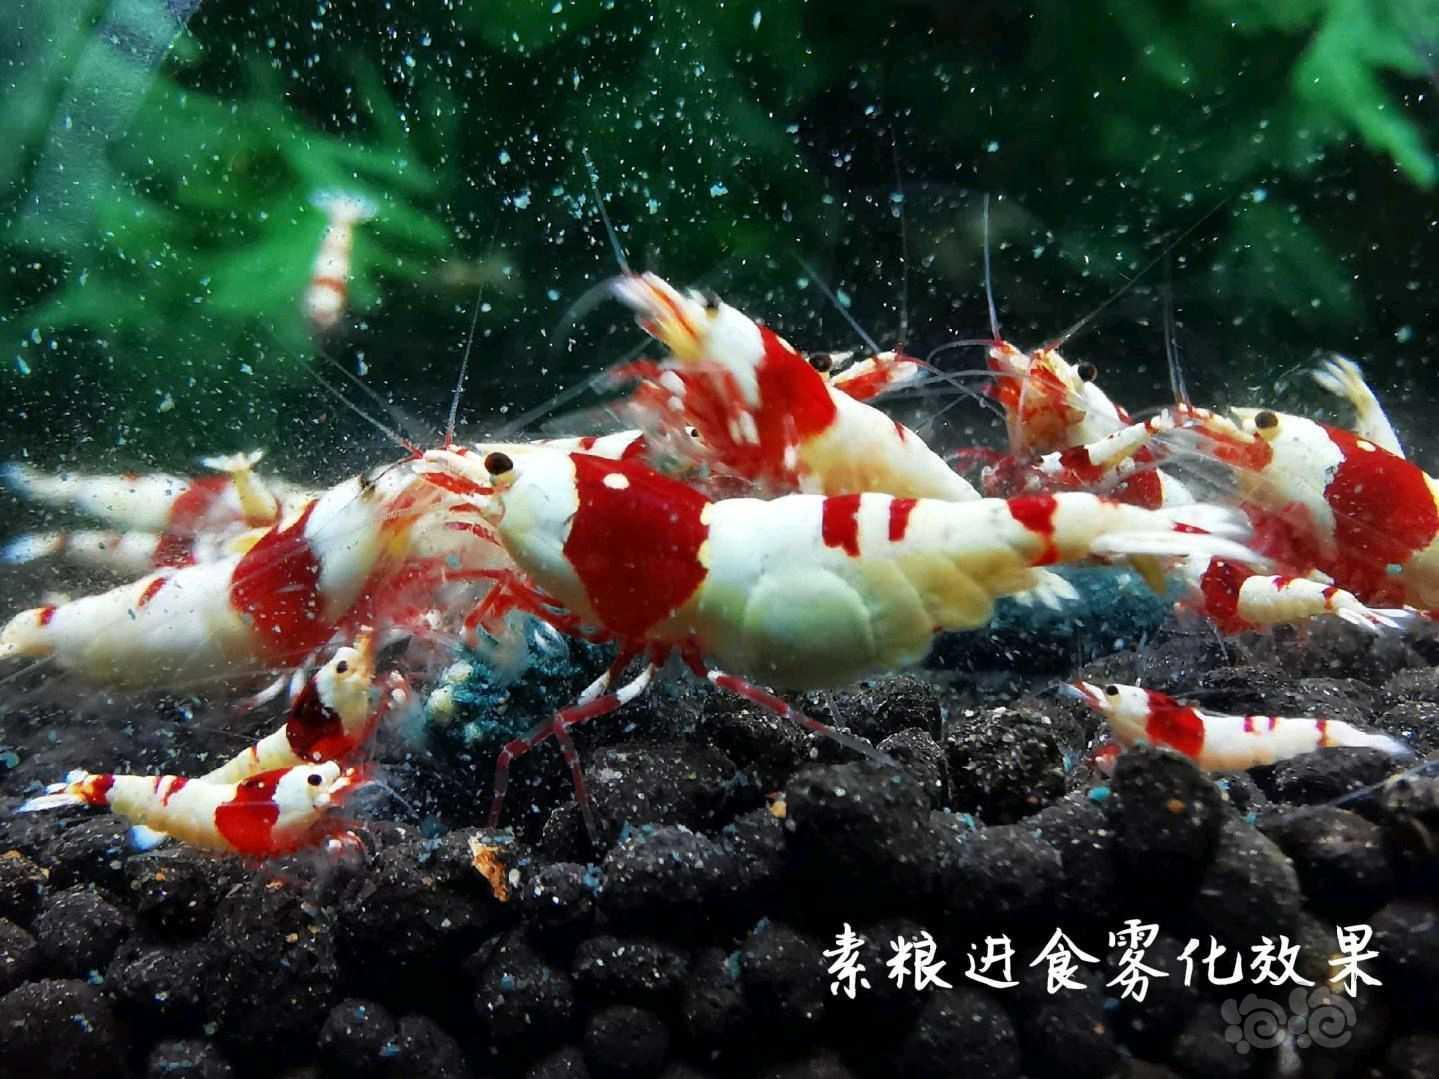 【用品】2021-08-09#RMB拍卖瑾福水晶虾饲料一套-图6